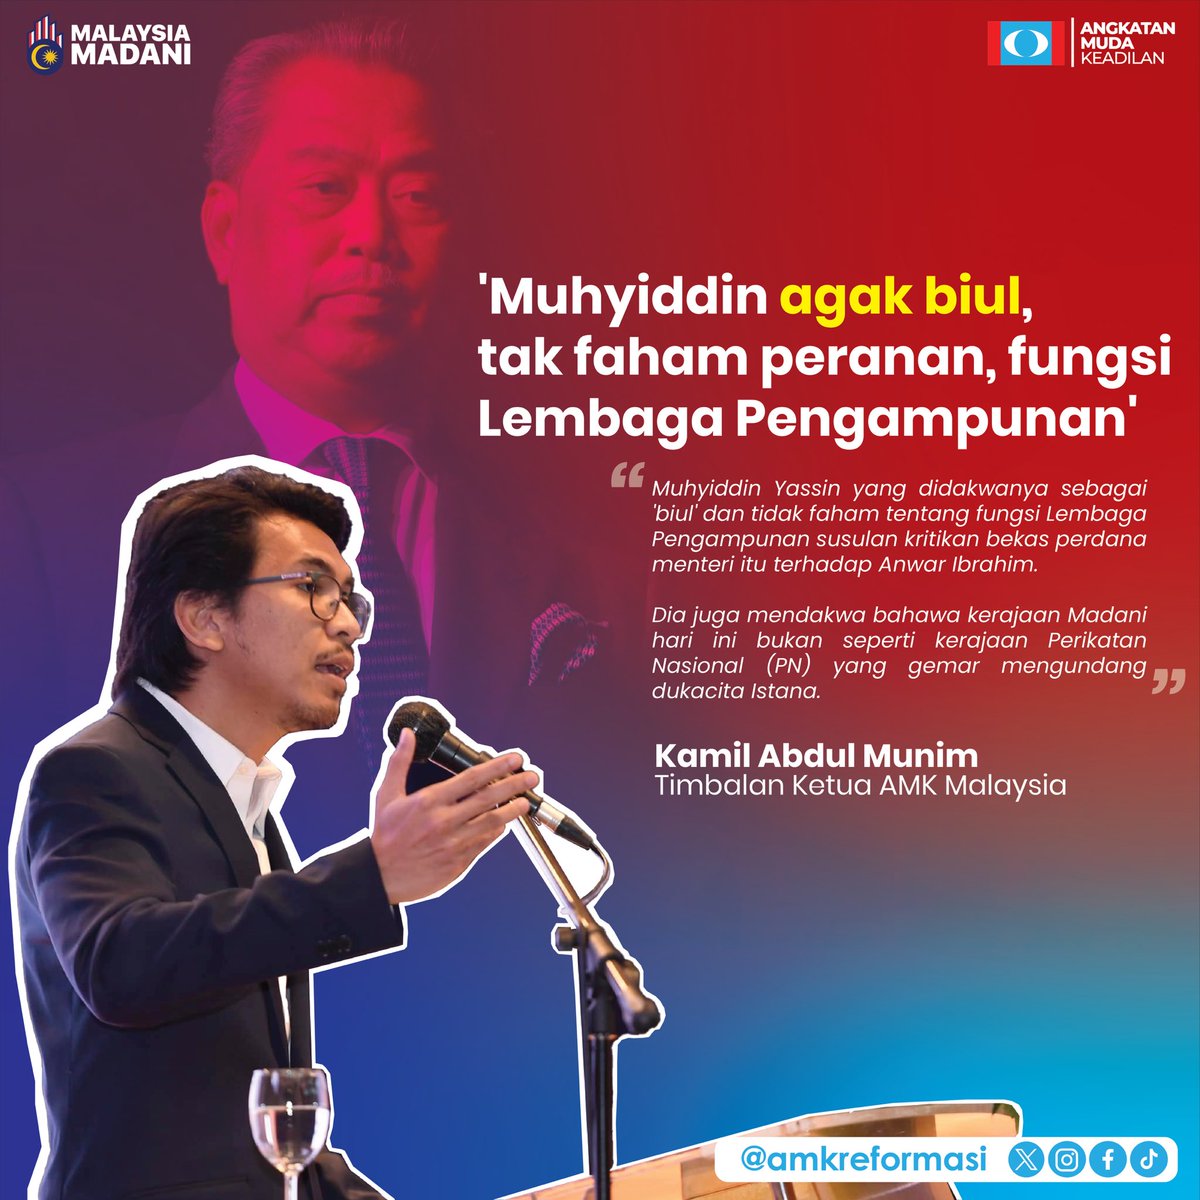 ‘Muhyiddin agak biul, tidak faham peranan, fungsi Lembaga Pengampunan. “ - @kamilmunim , Timbalan Ketua AMK Malaysia